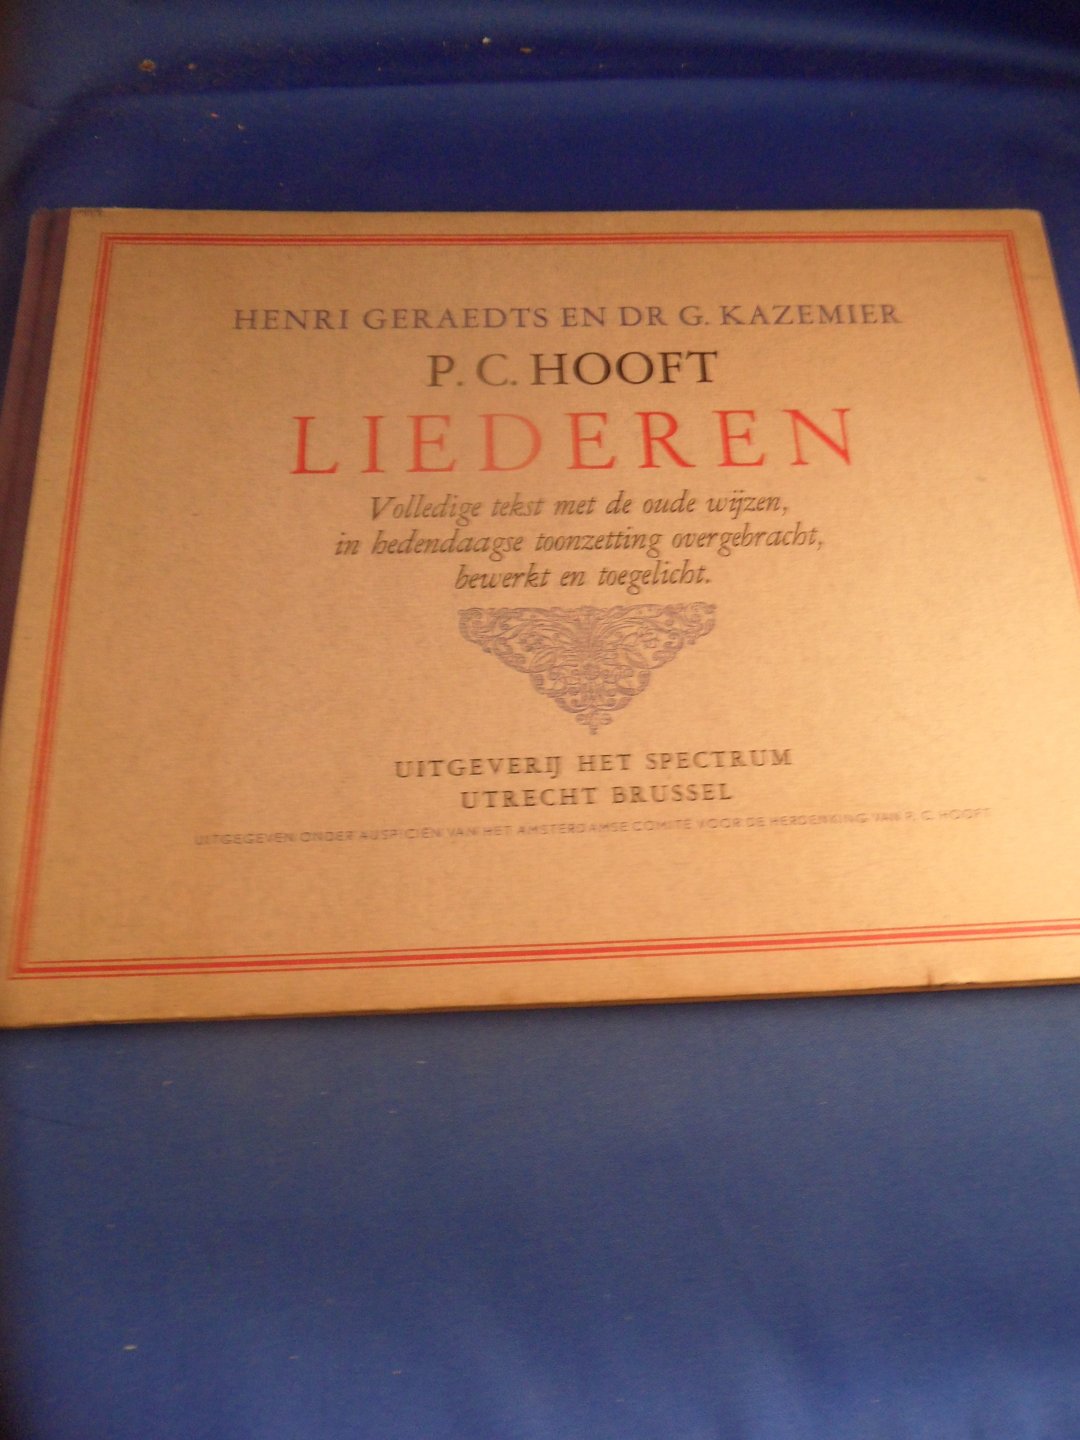 Hooft, P.C. - Liederen. Volledige tekst met de oude wijzen, in hedendaagse toonzetting overgebracht, bewerkt en toegelicht